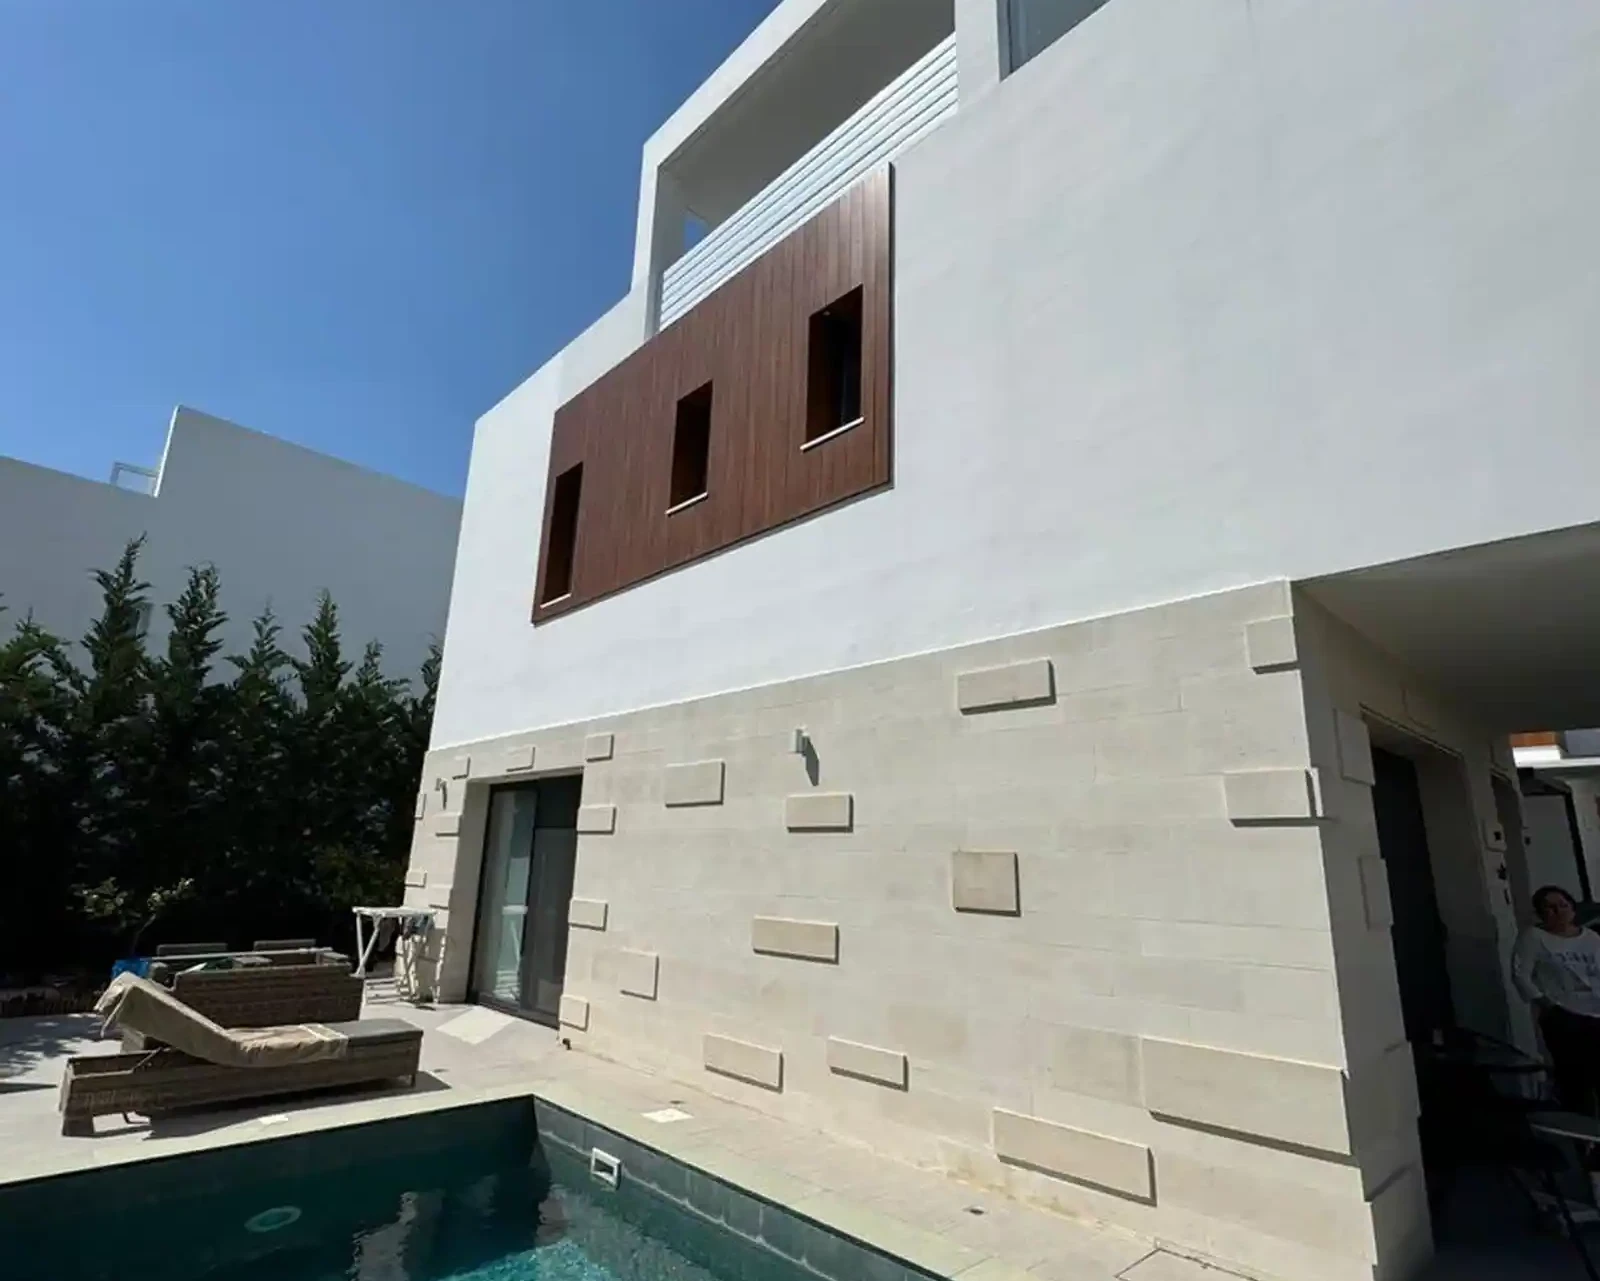 3-bedroom villa to rent €2.800, image 1